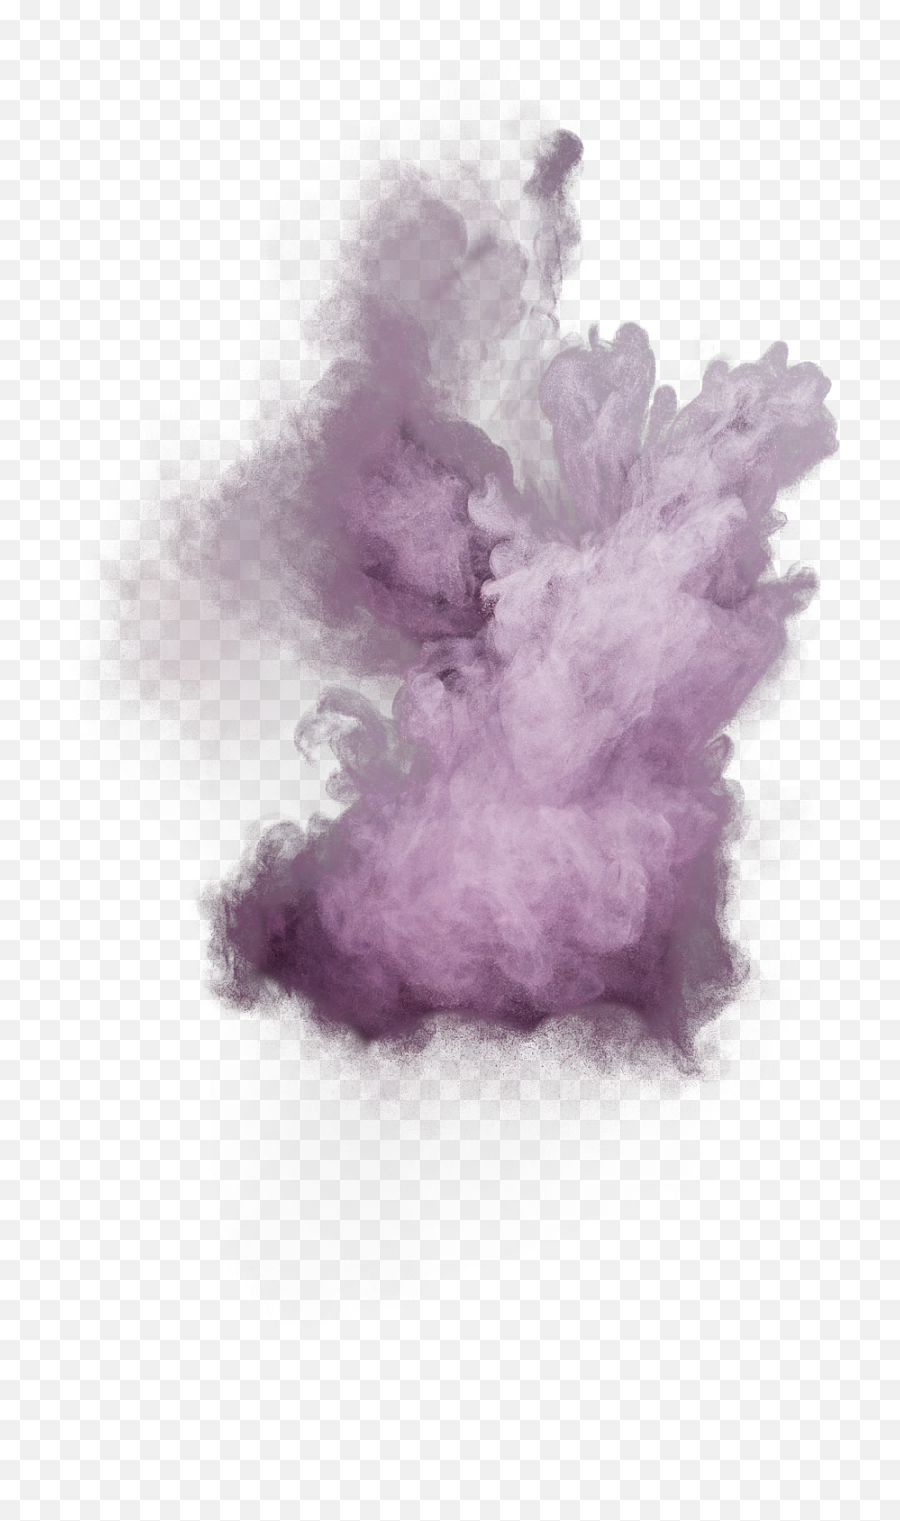 Purple Powder Explosion Png Image - Transparent Powder Explosion Png,Explosion Png